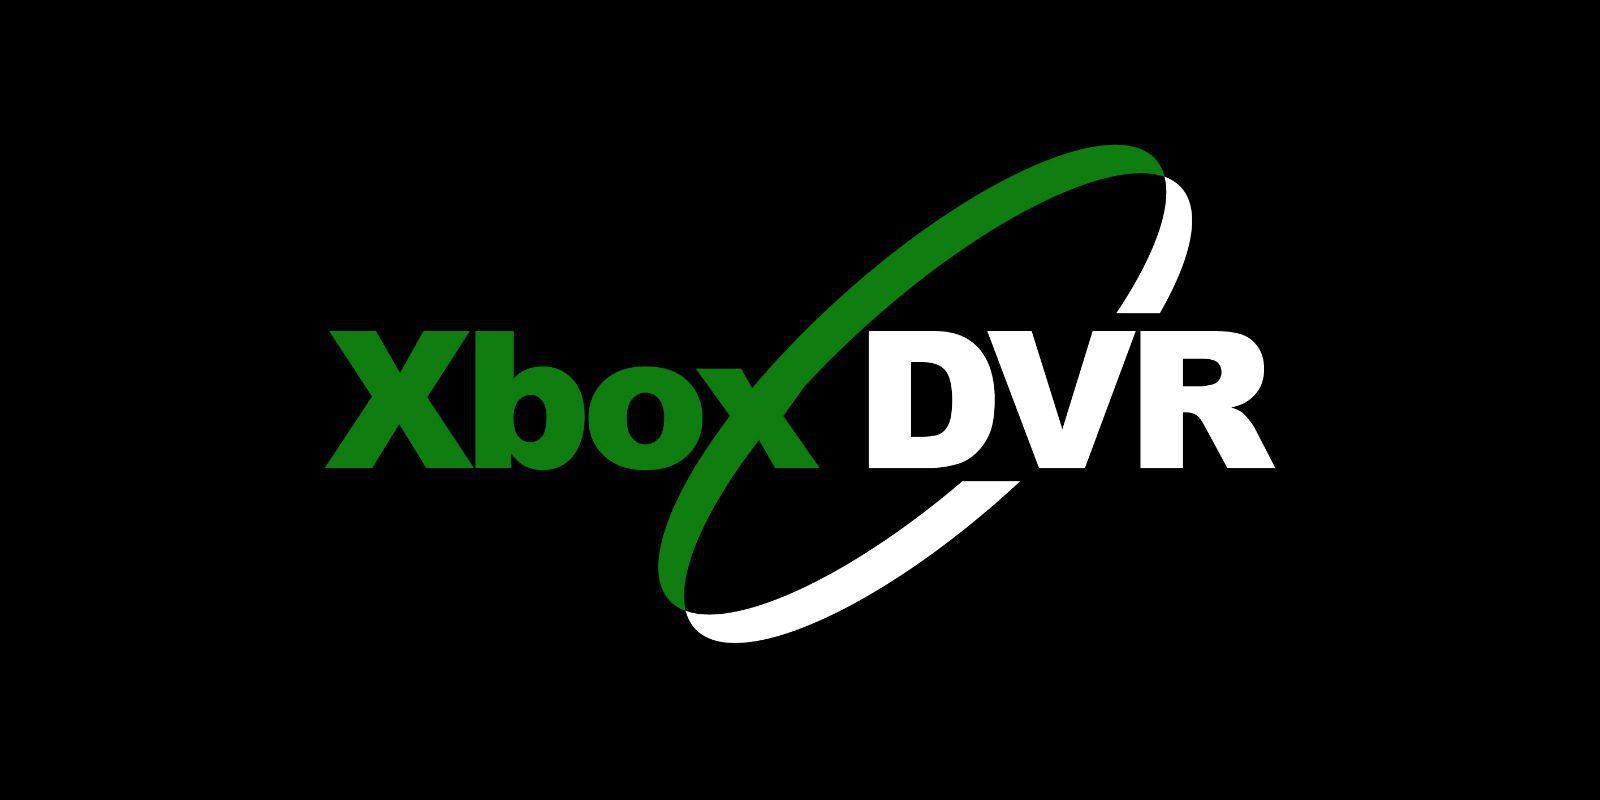 Xbox Game DVR permite ahora grabar vídeos de 1080p de hasta una hora